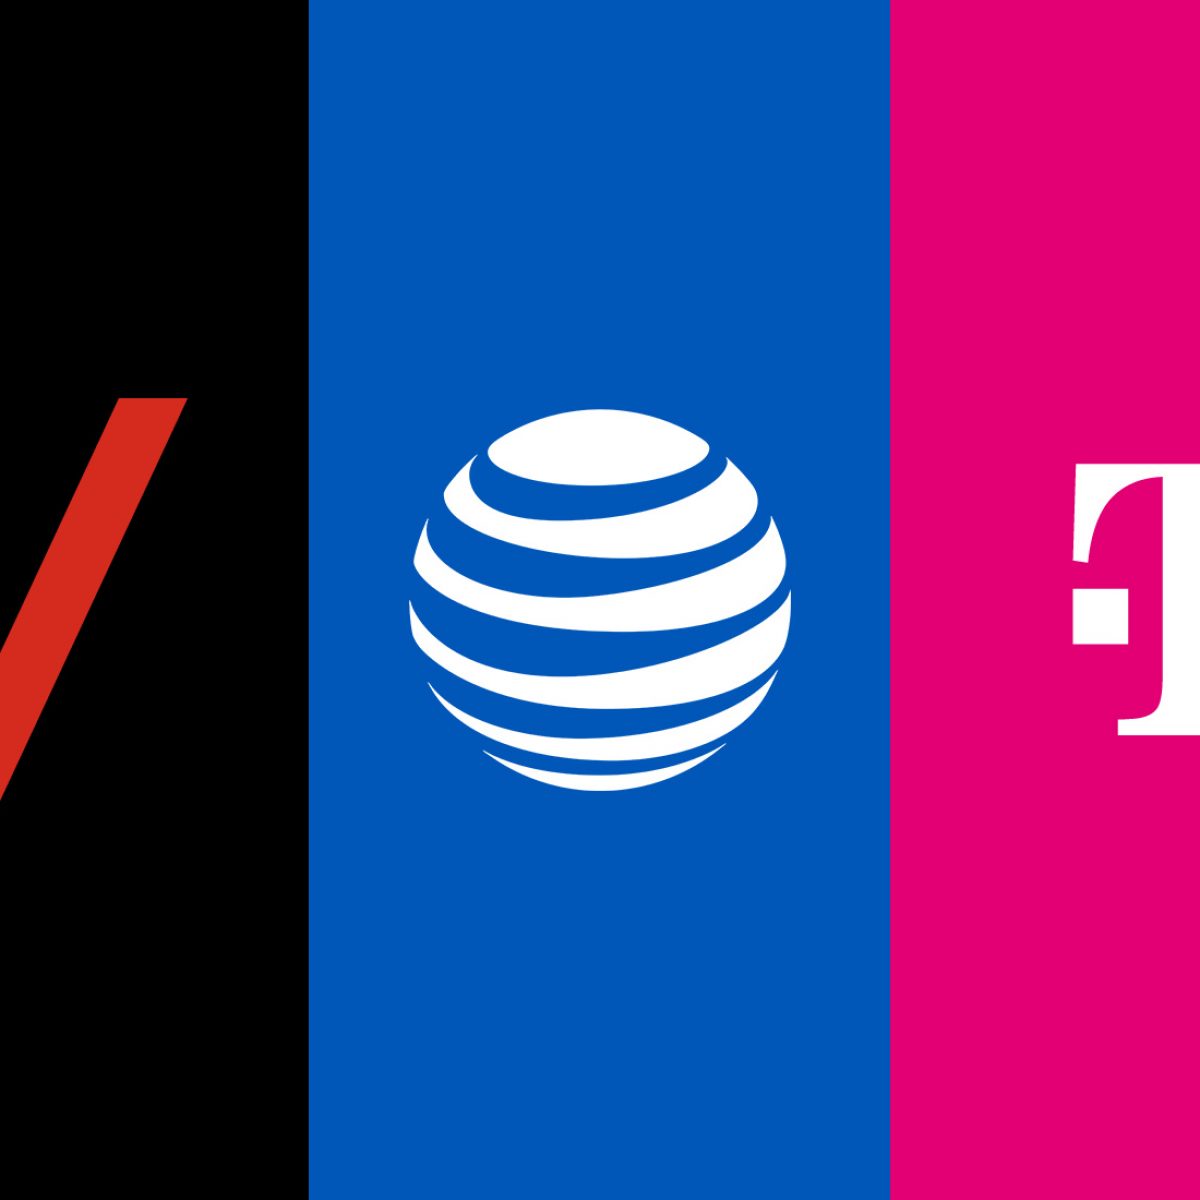 2. Pricing Comparison: AT&T vs. Verizon